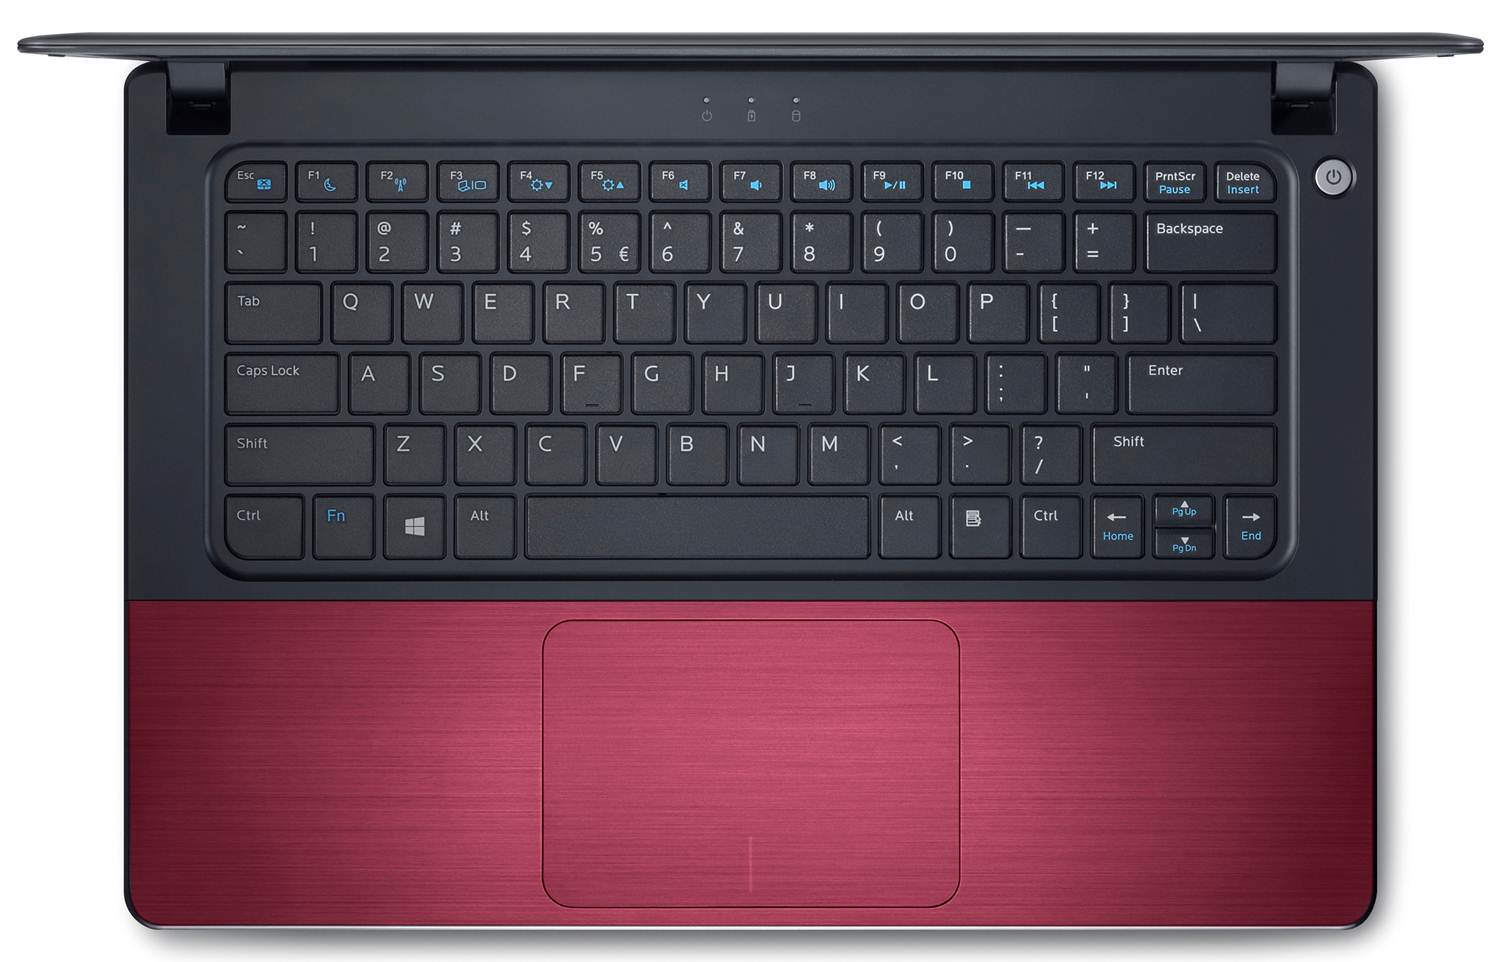 AspirantSG - Vostro 5460 Red Keyboard